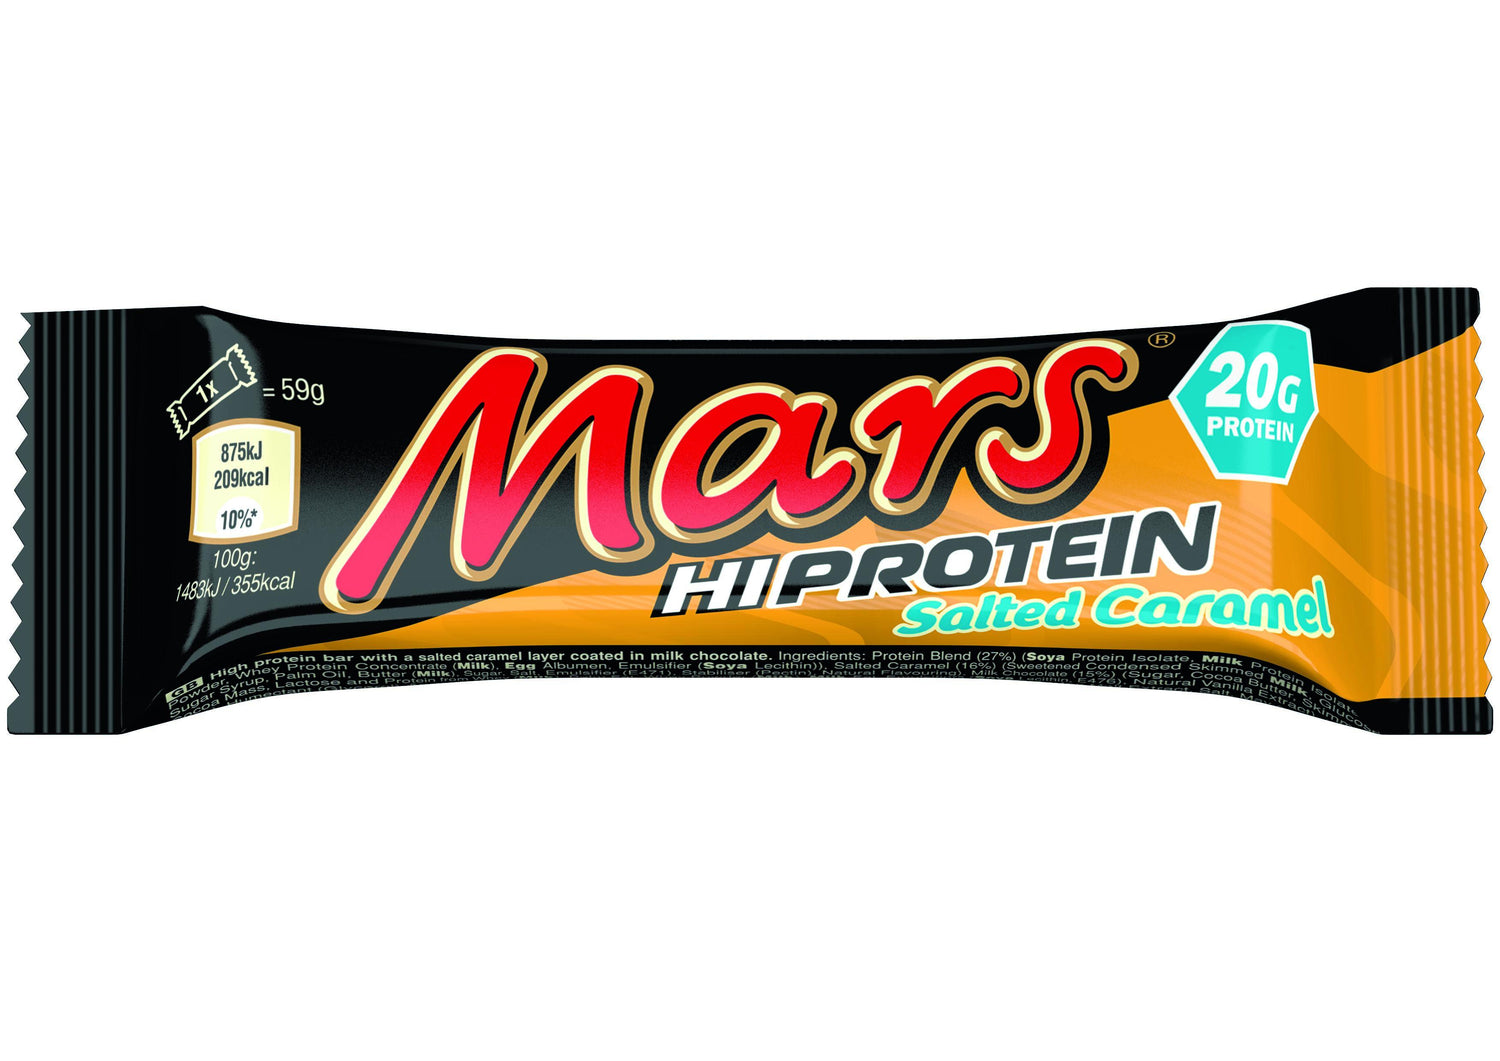 Batoniki proteinowe Mars Hi 1 x 59g - Solony Karmel - theskinnyfoodco